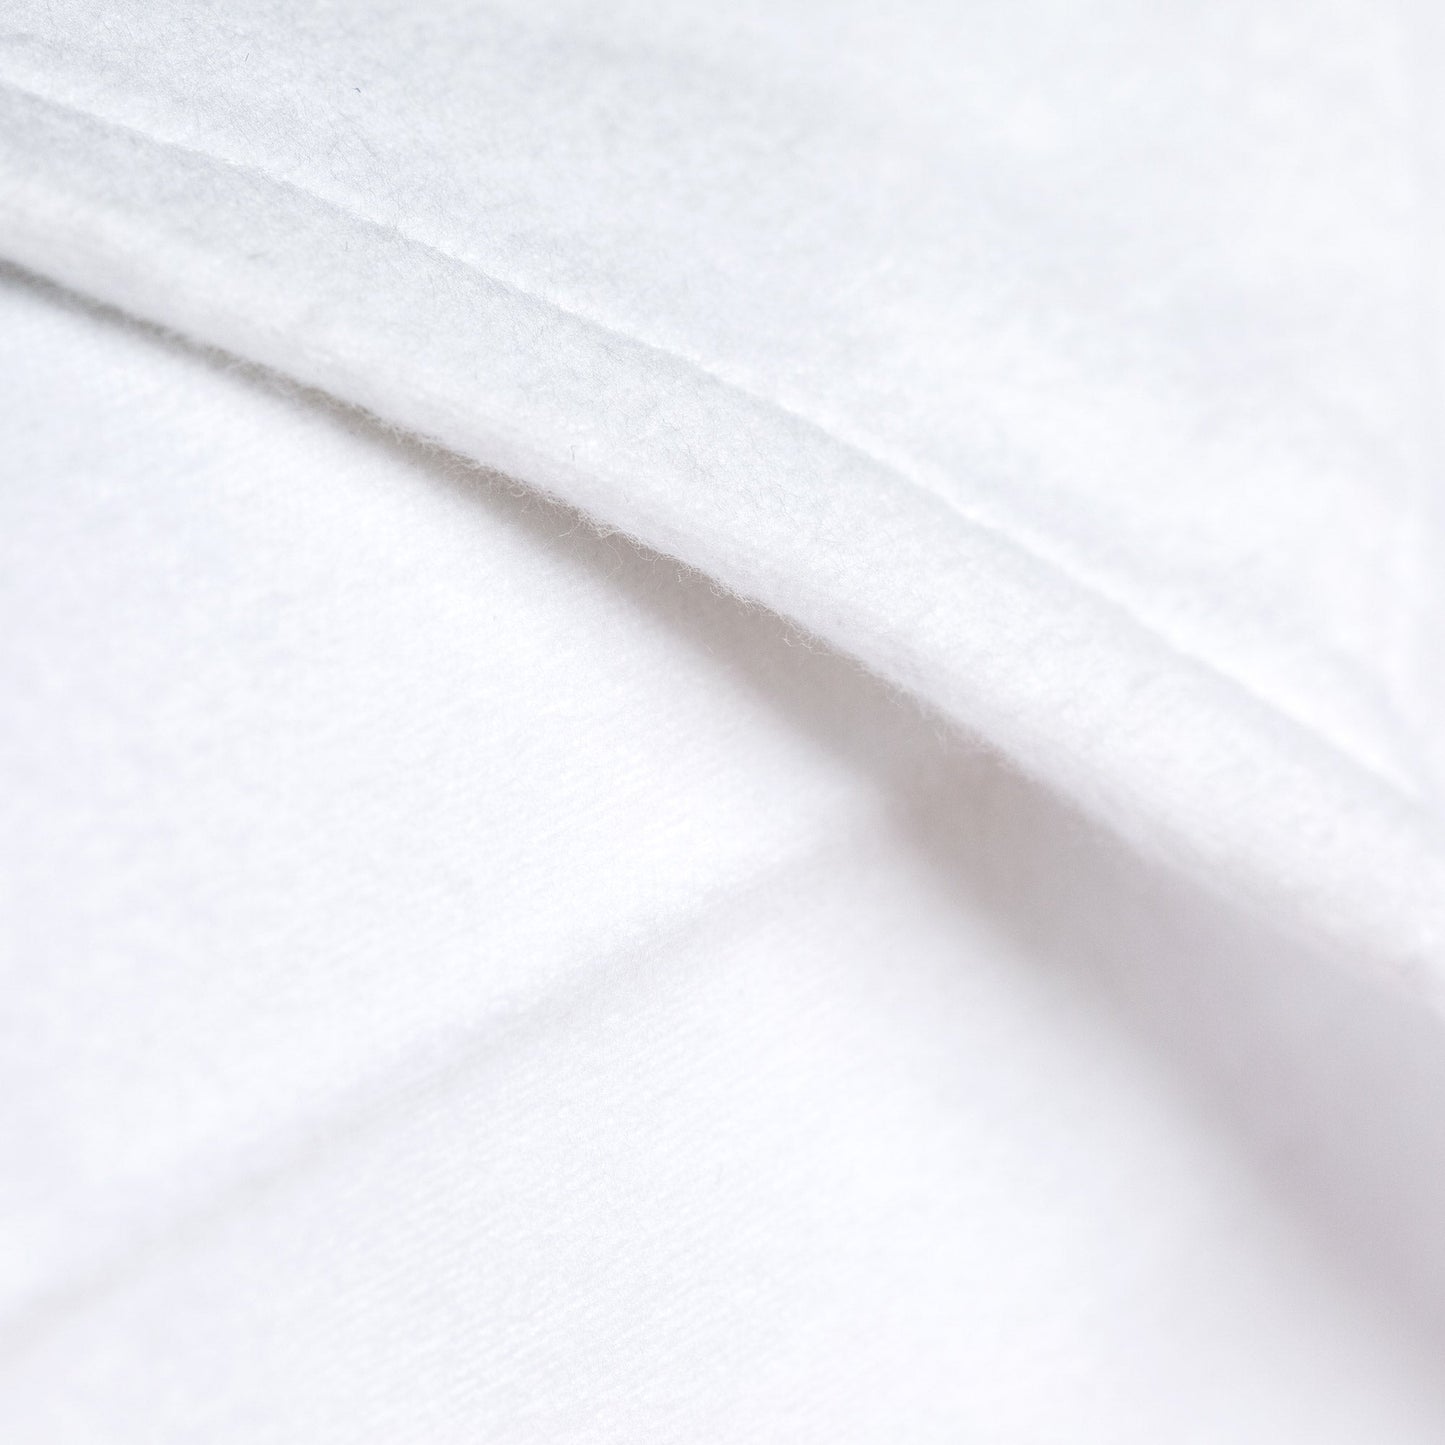 The Velvet Flannel Sheet: Pillowcases